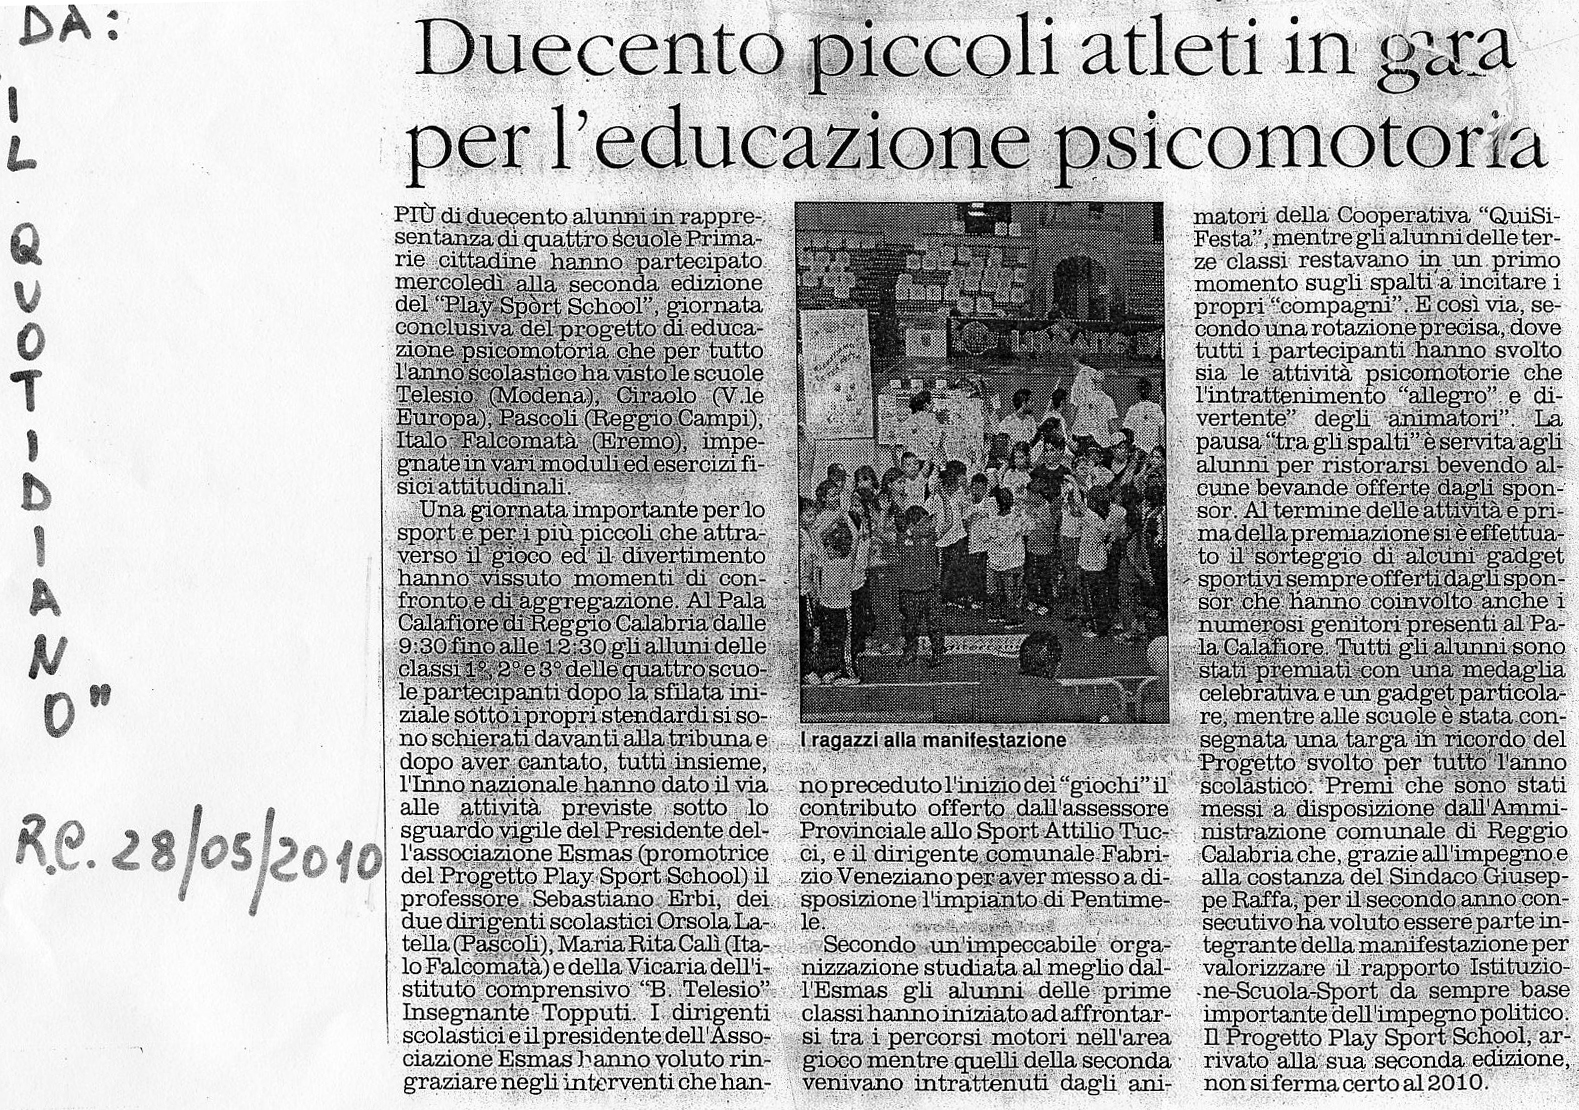 Rassegna Stampa 2010 Primaria Piccoli atleti in gara